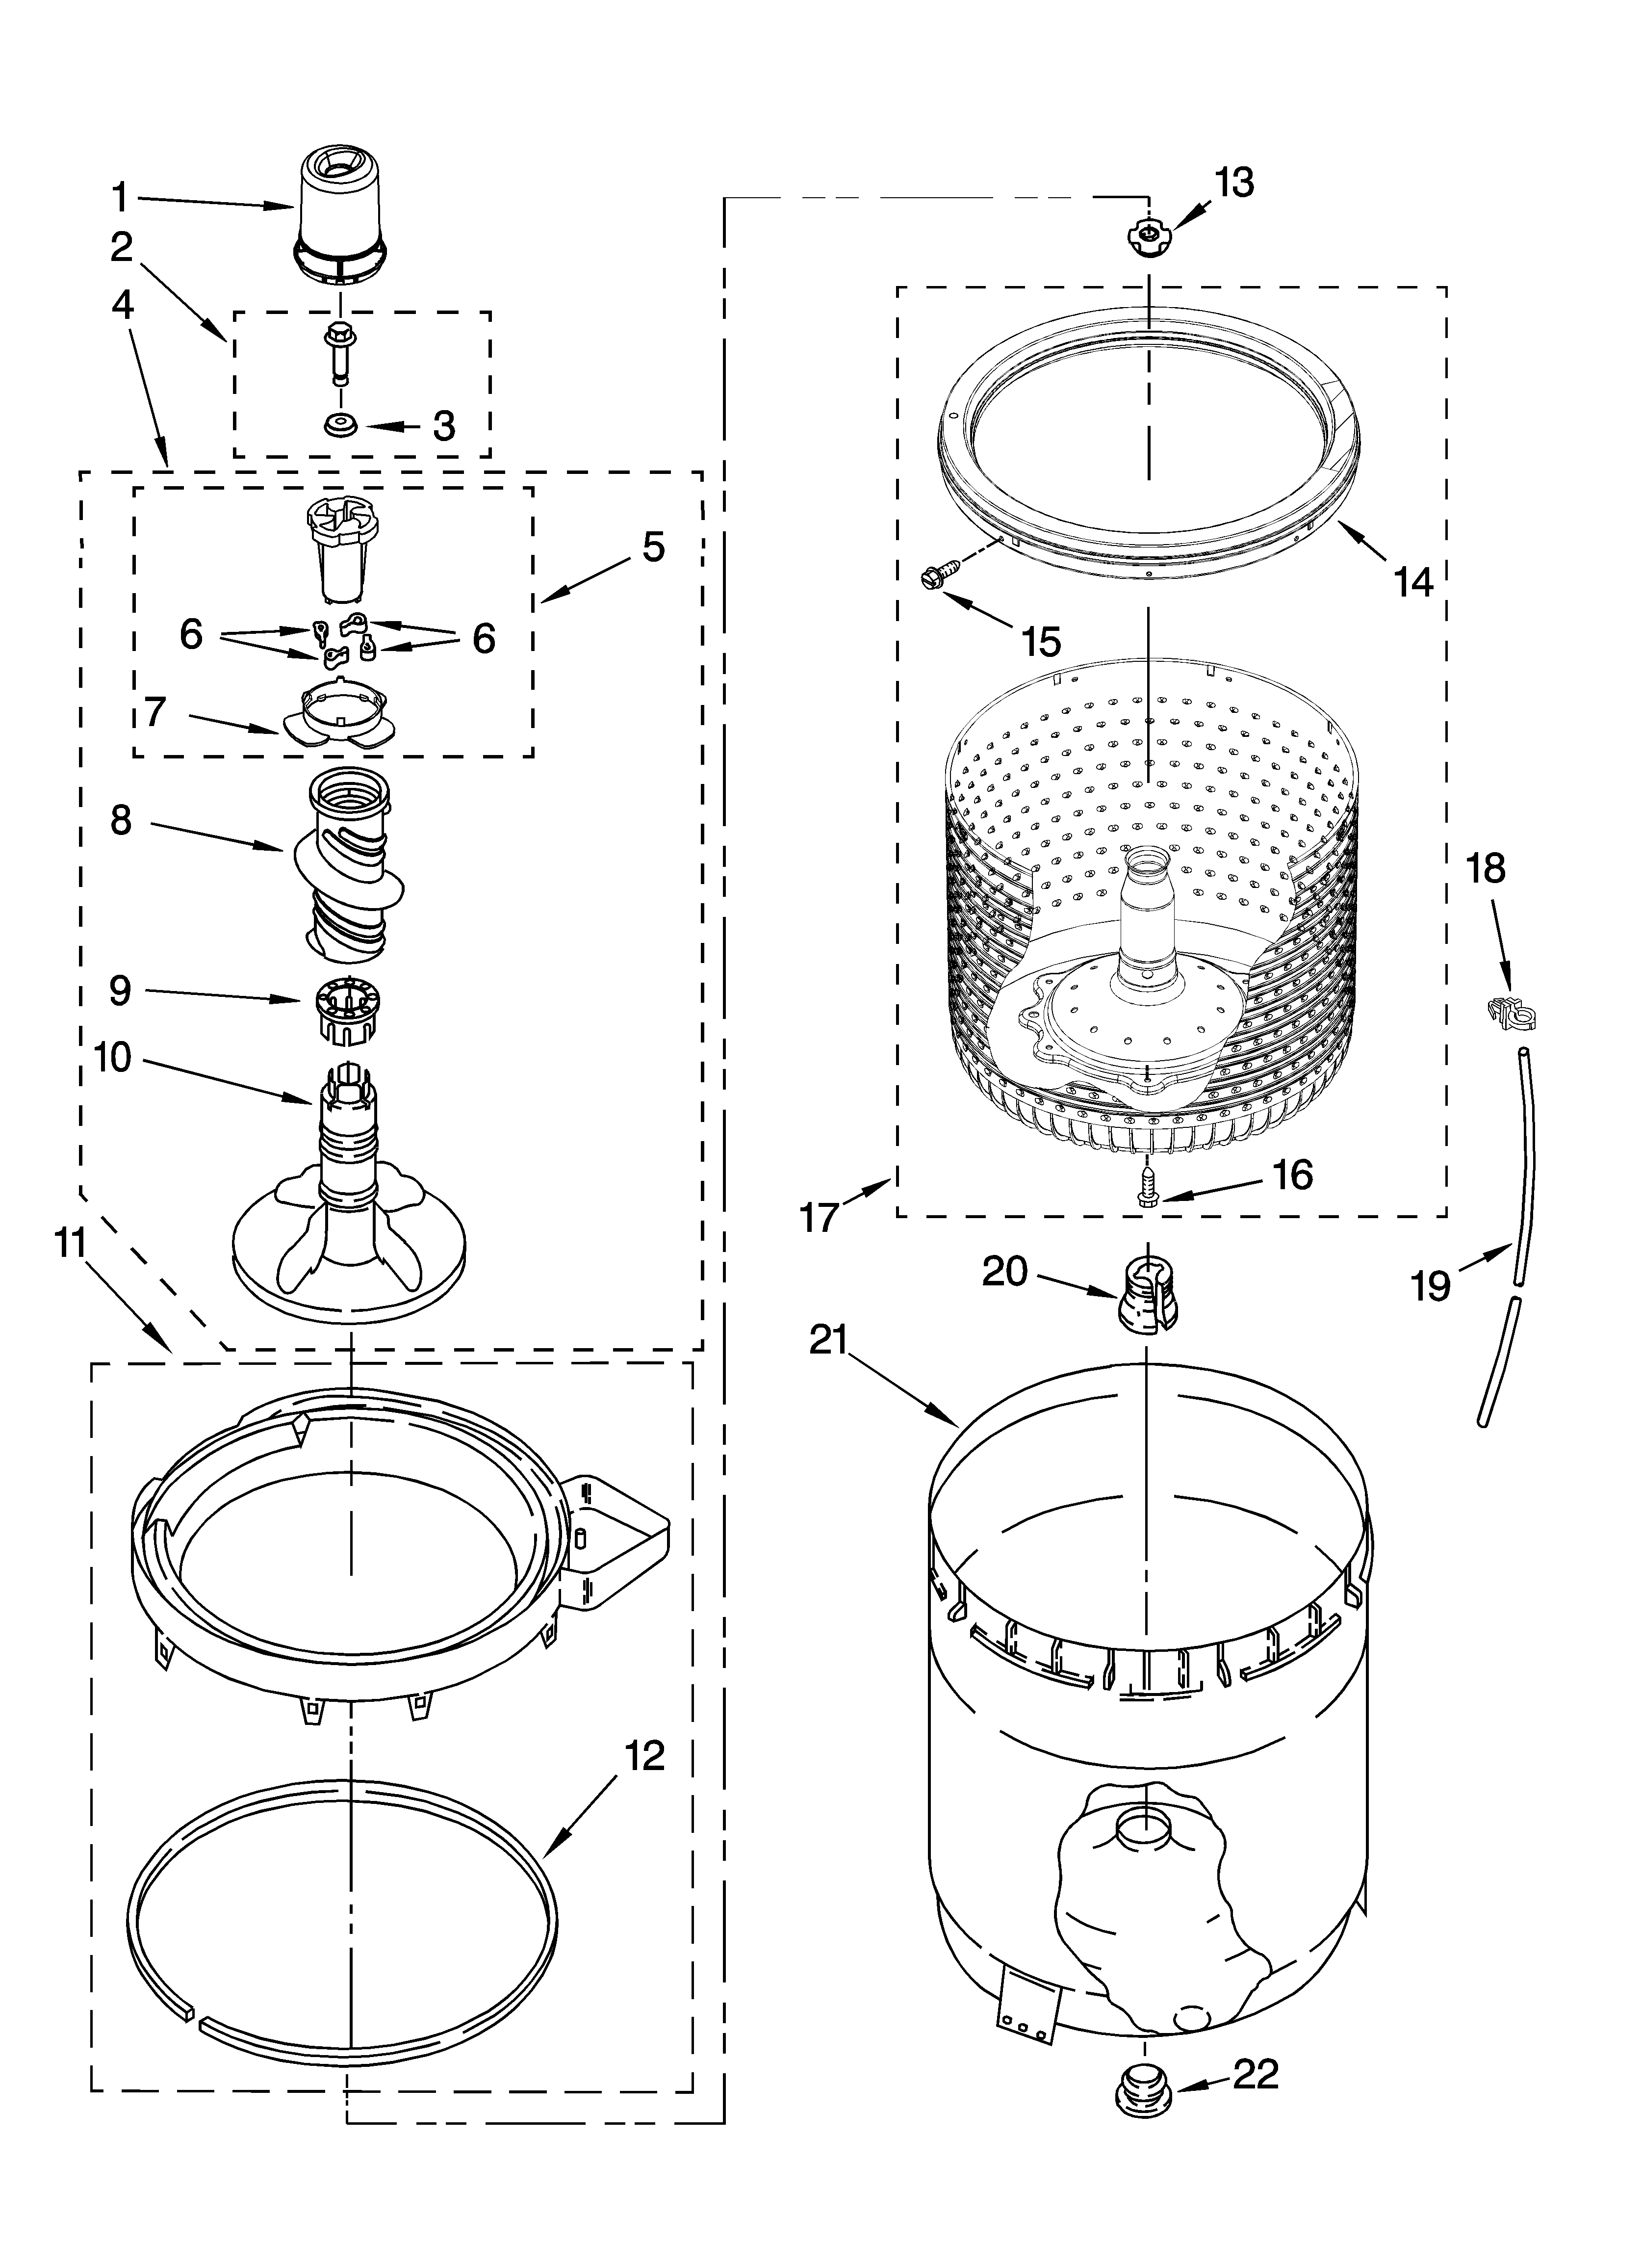 Whirlpool Washer Schematic Diagram